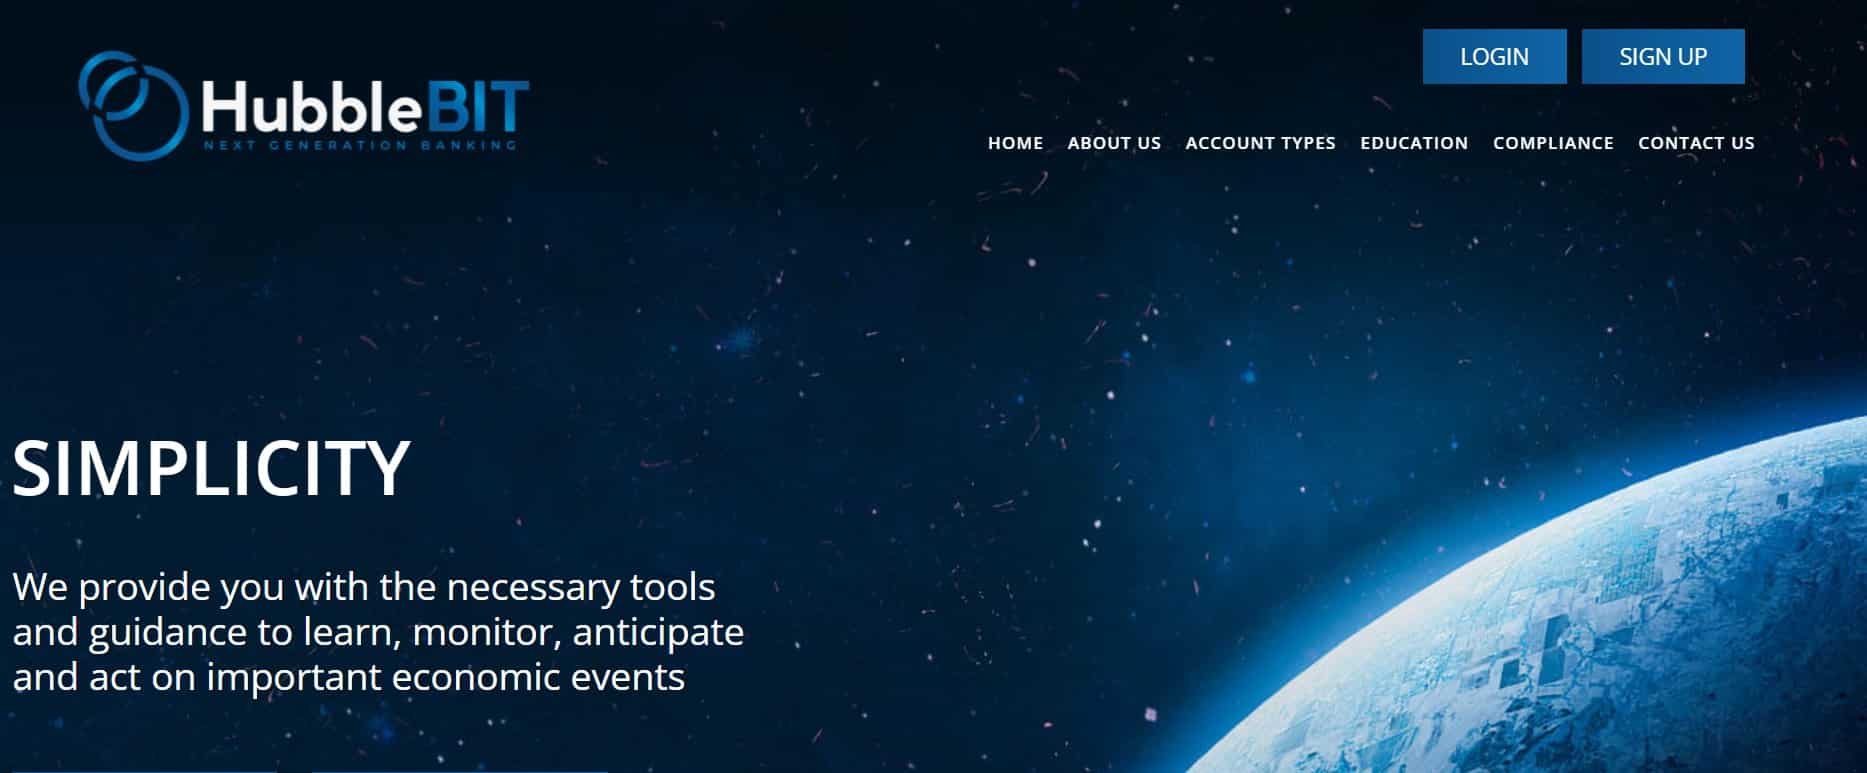 HubbleBIT website